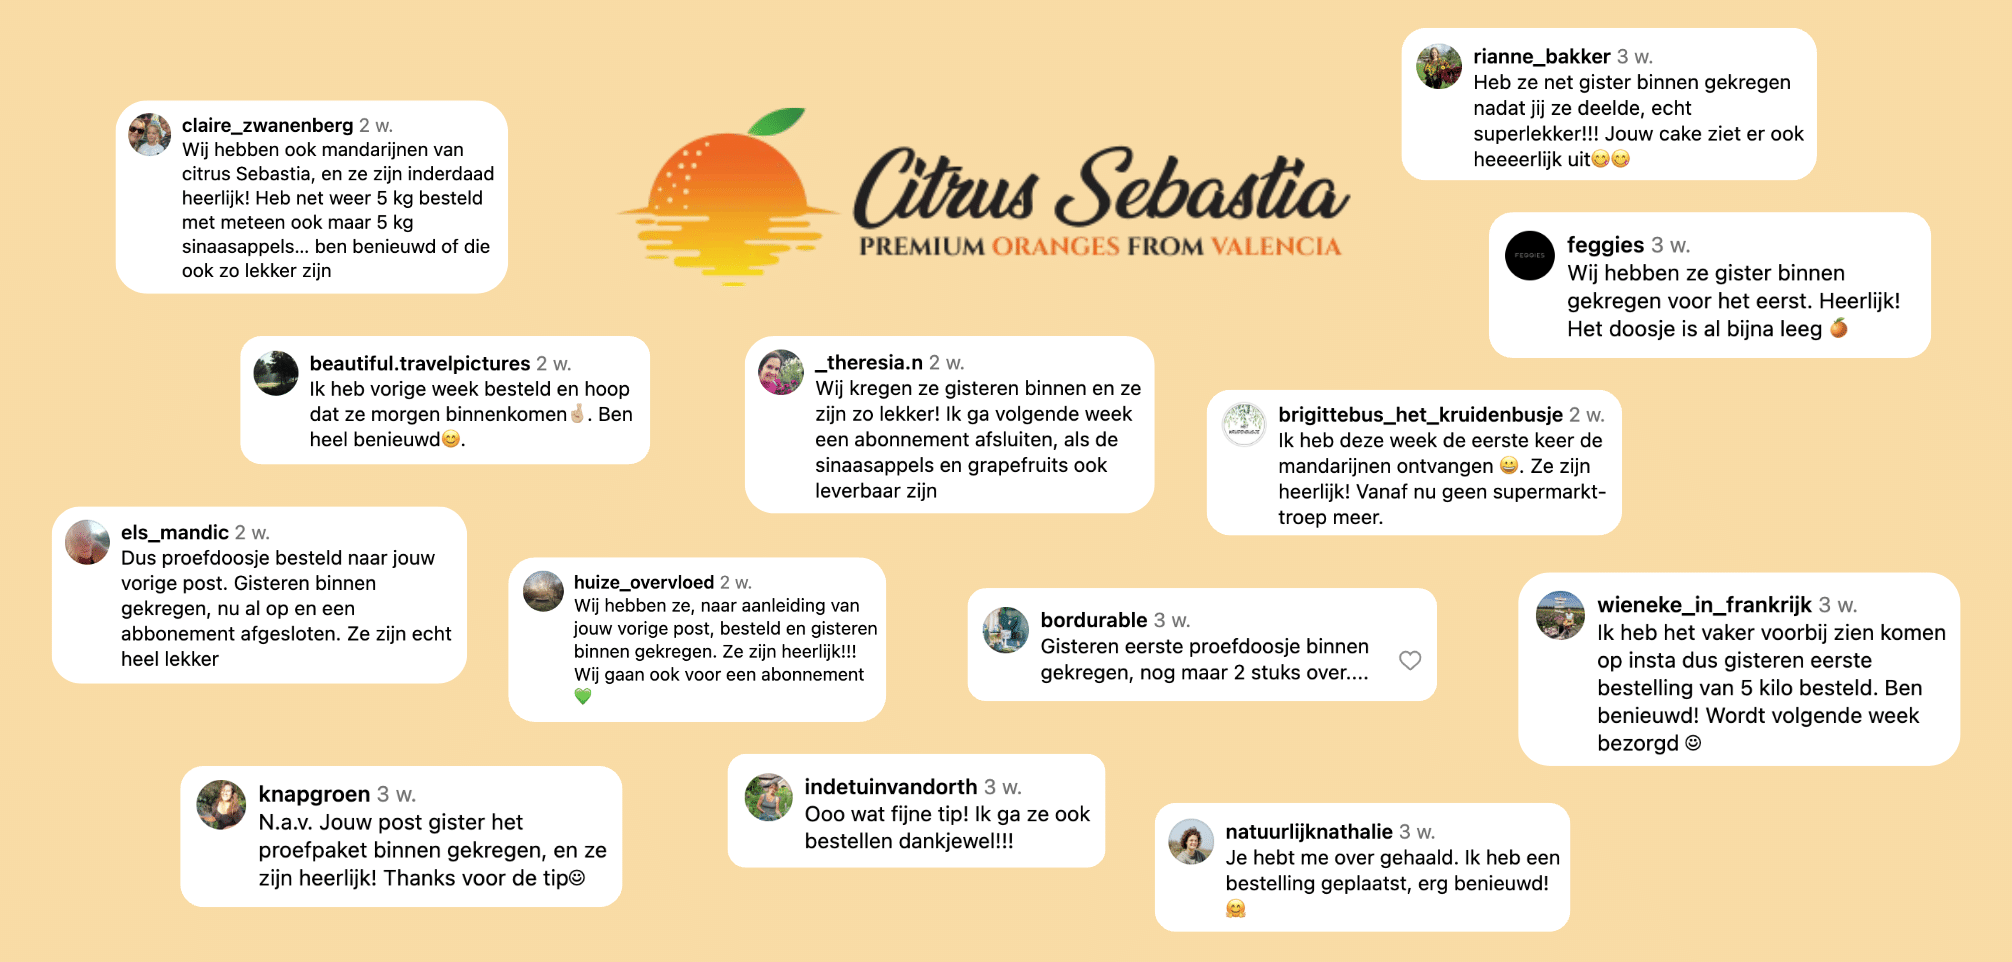 Engagement campagne Citrus Sebastia